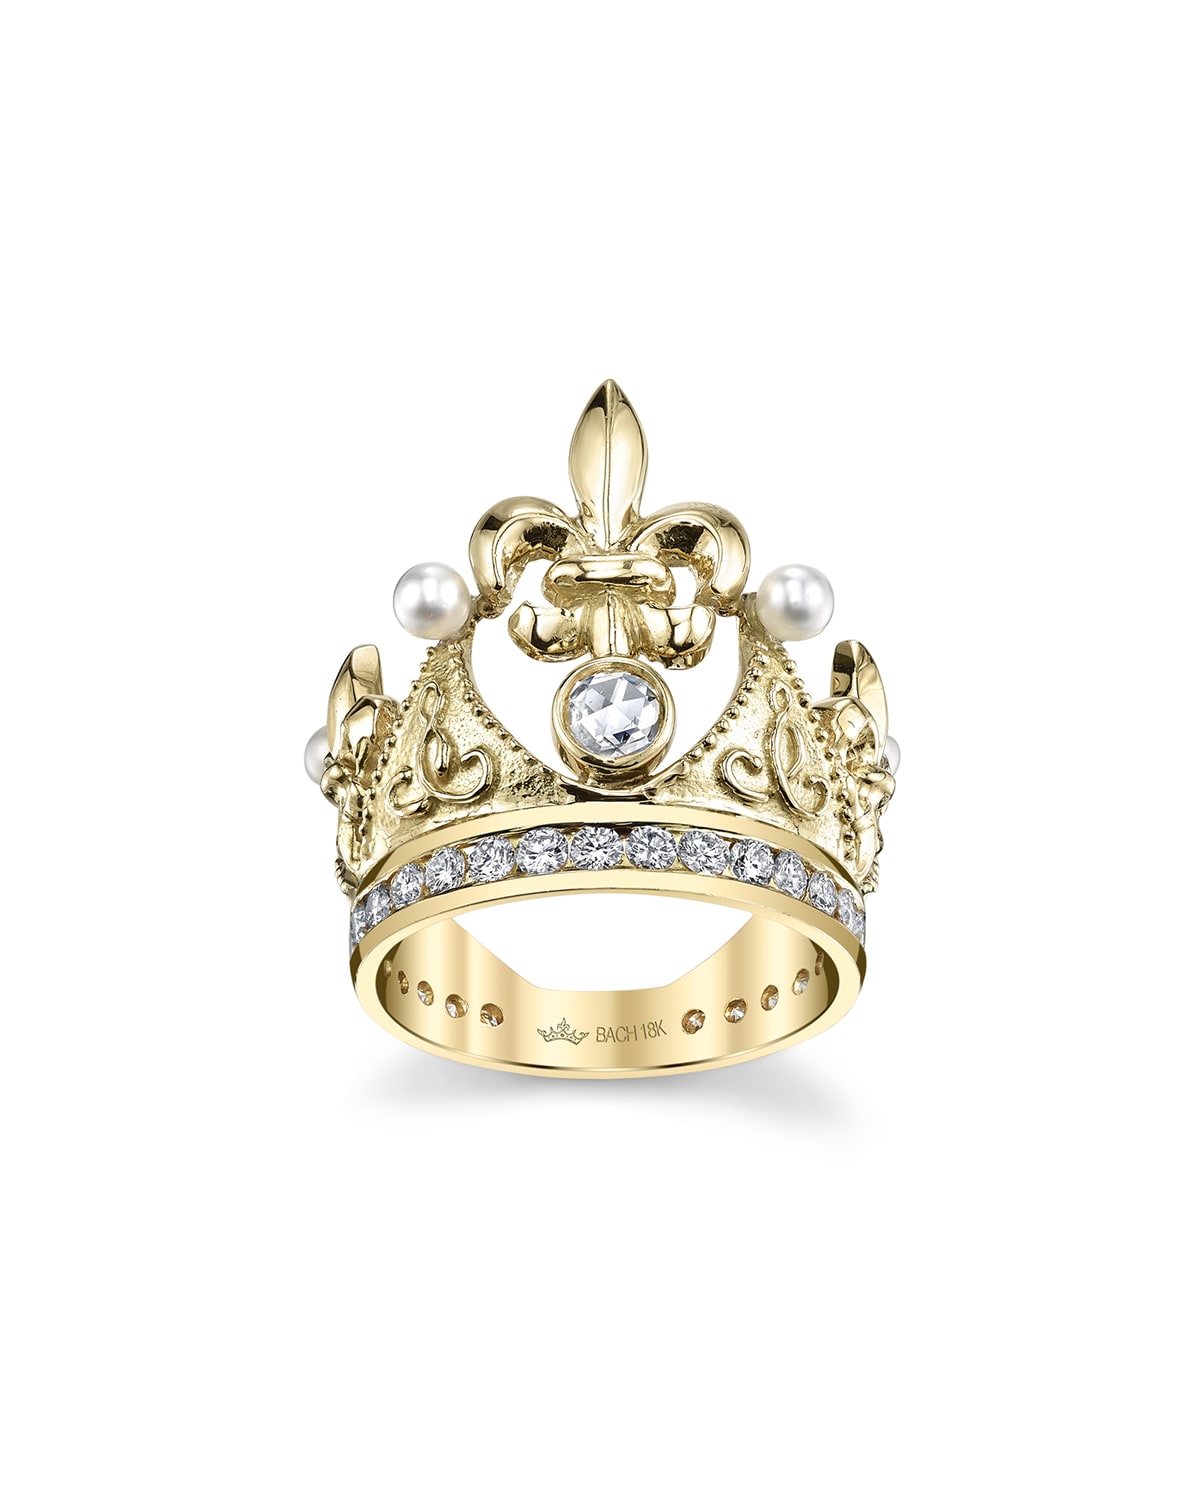 18k Fleur-de-Lis Diamond & Pearl Crown Ring, Size 5.75